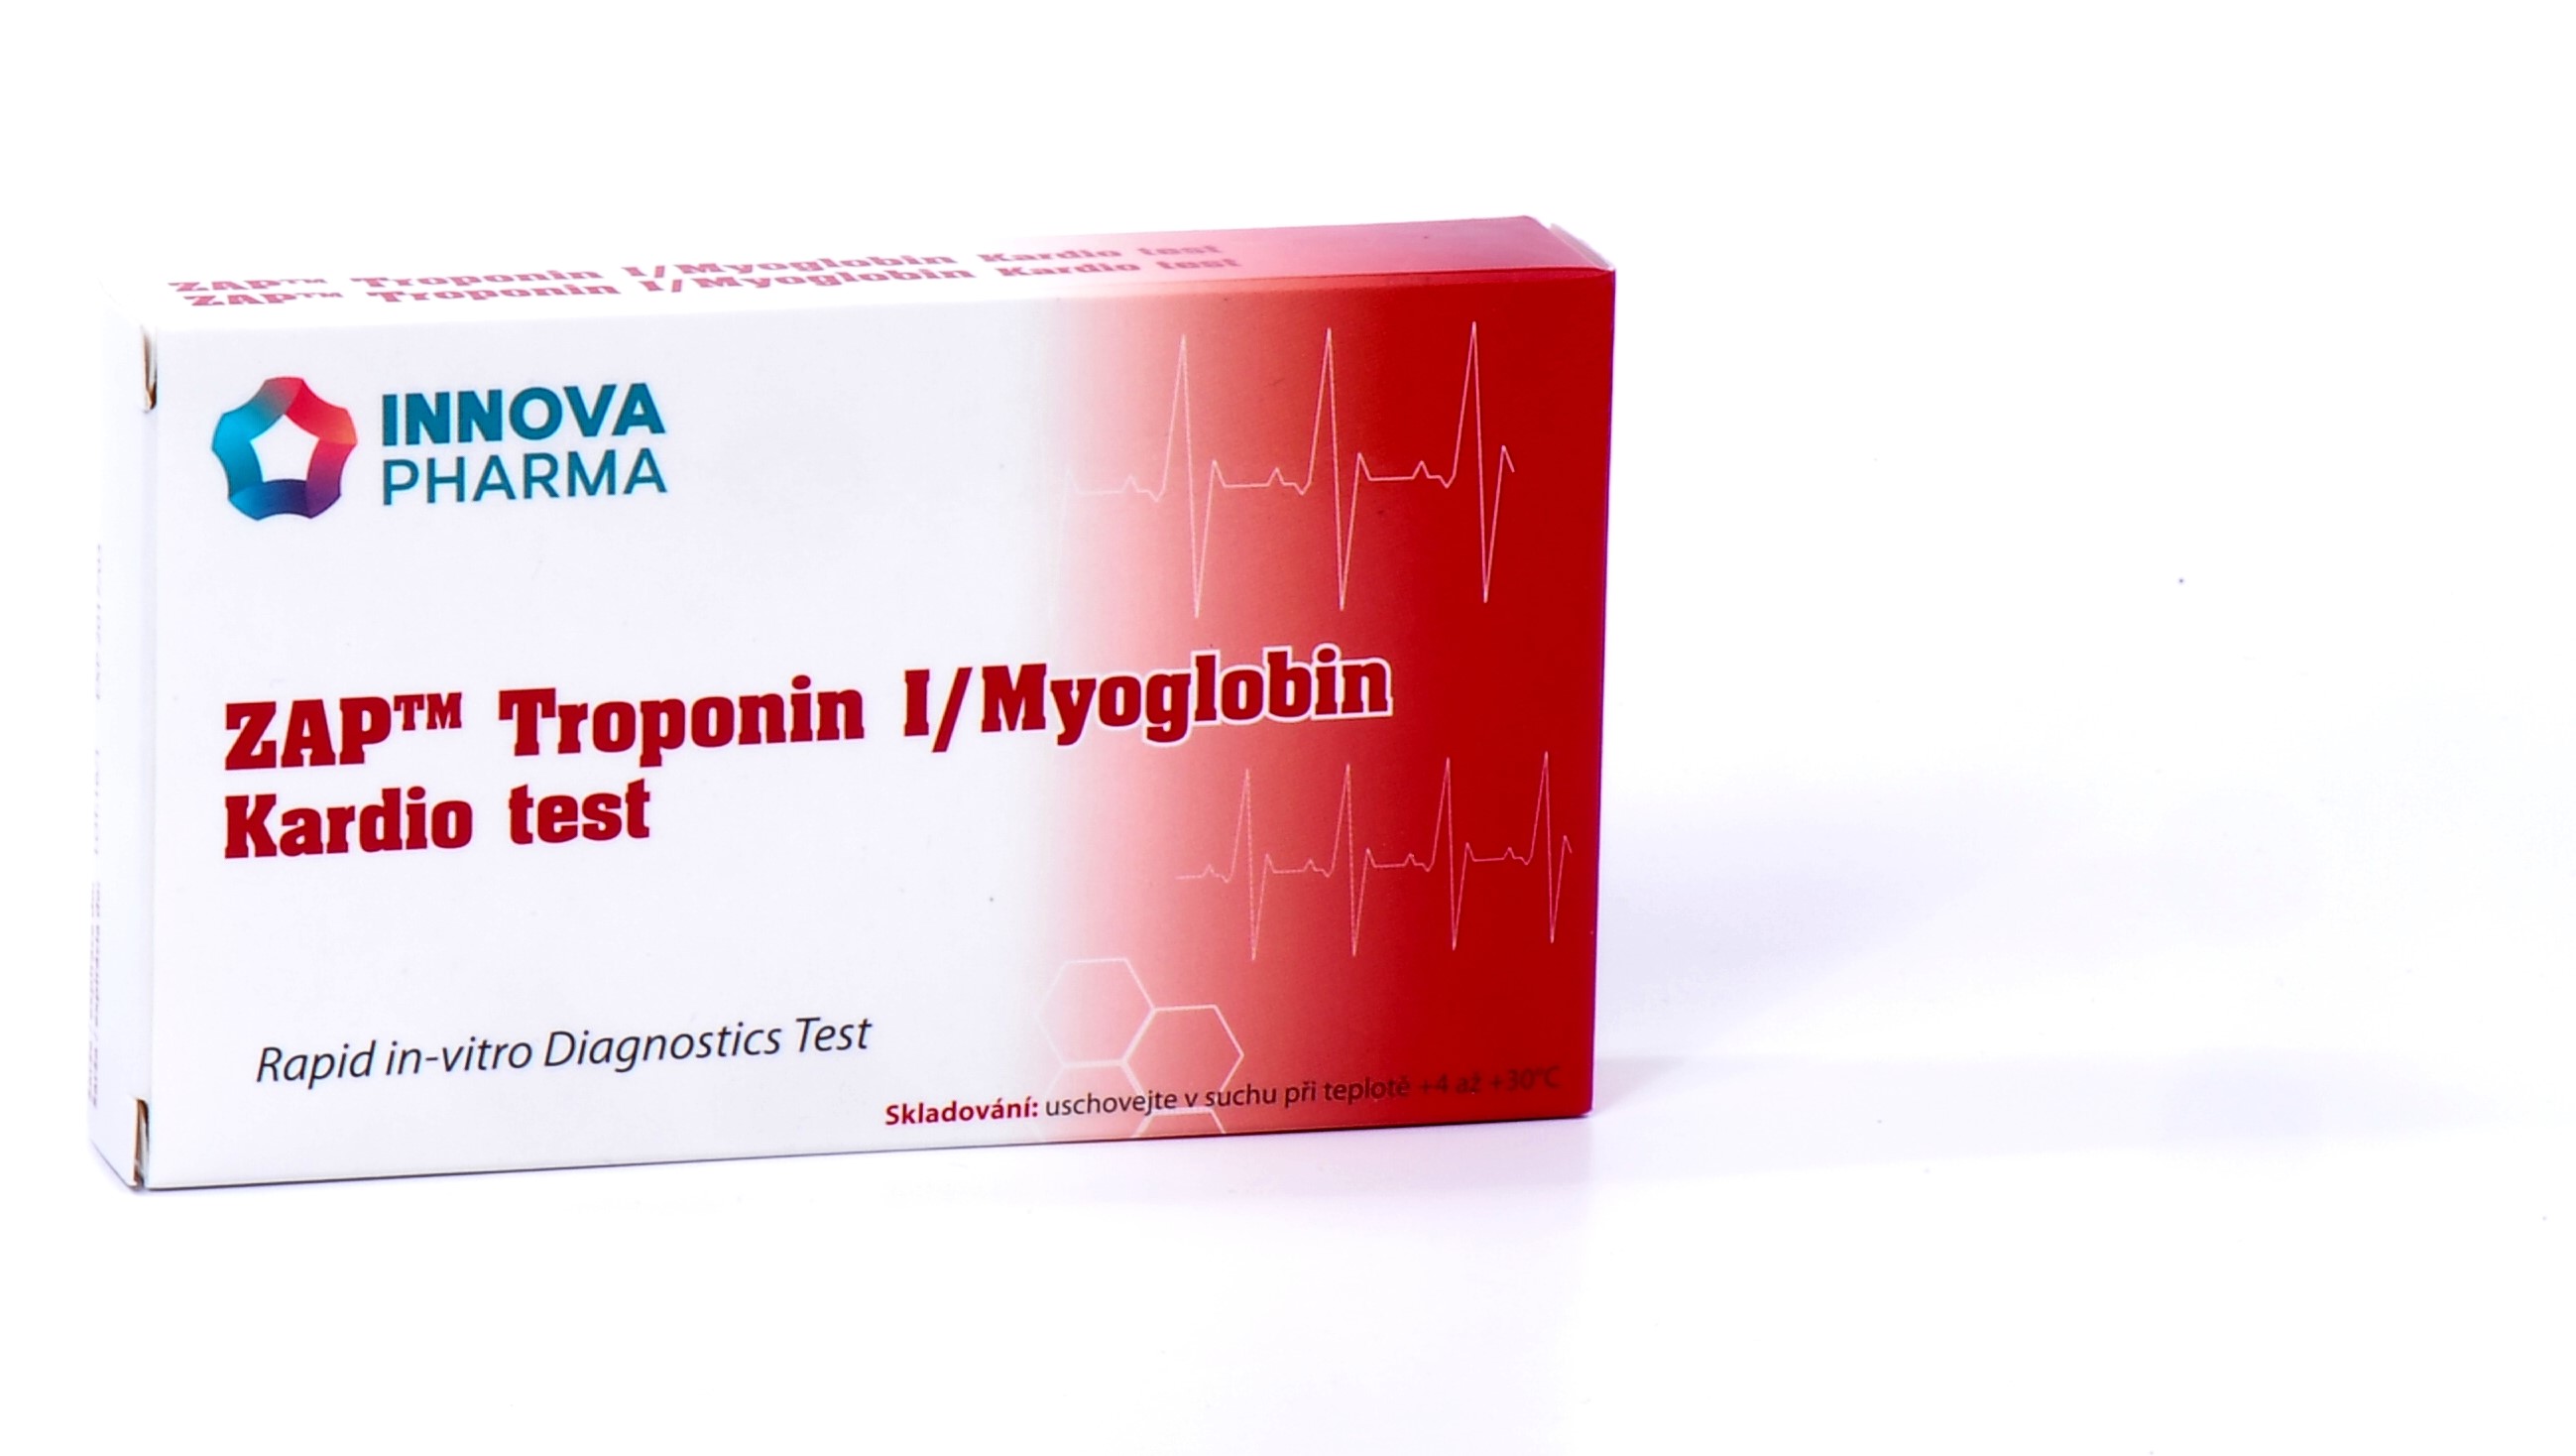 ZAP Troponin I/Myoglobin Kardio test